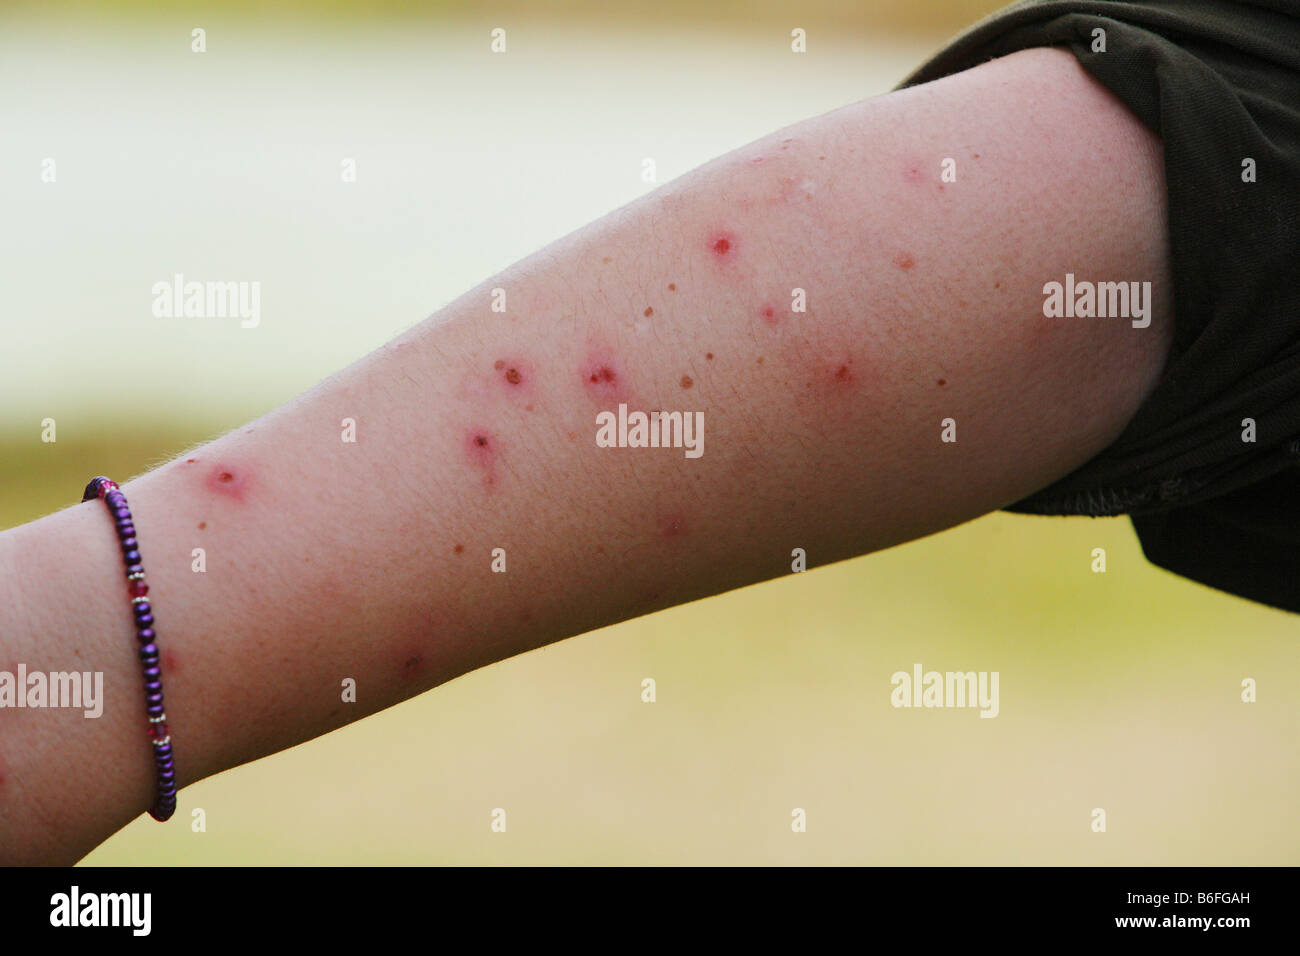 Punture di zanzara immagini e fotografie stock ad alta risoluzione - Alamy